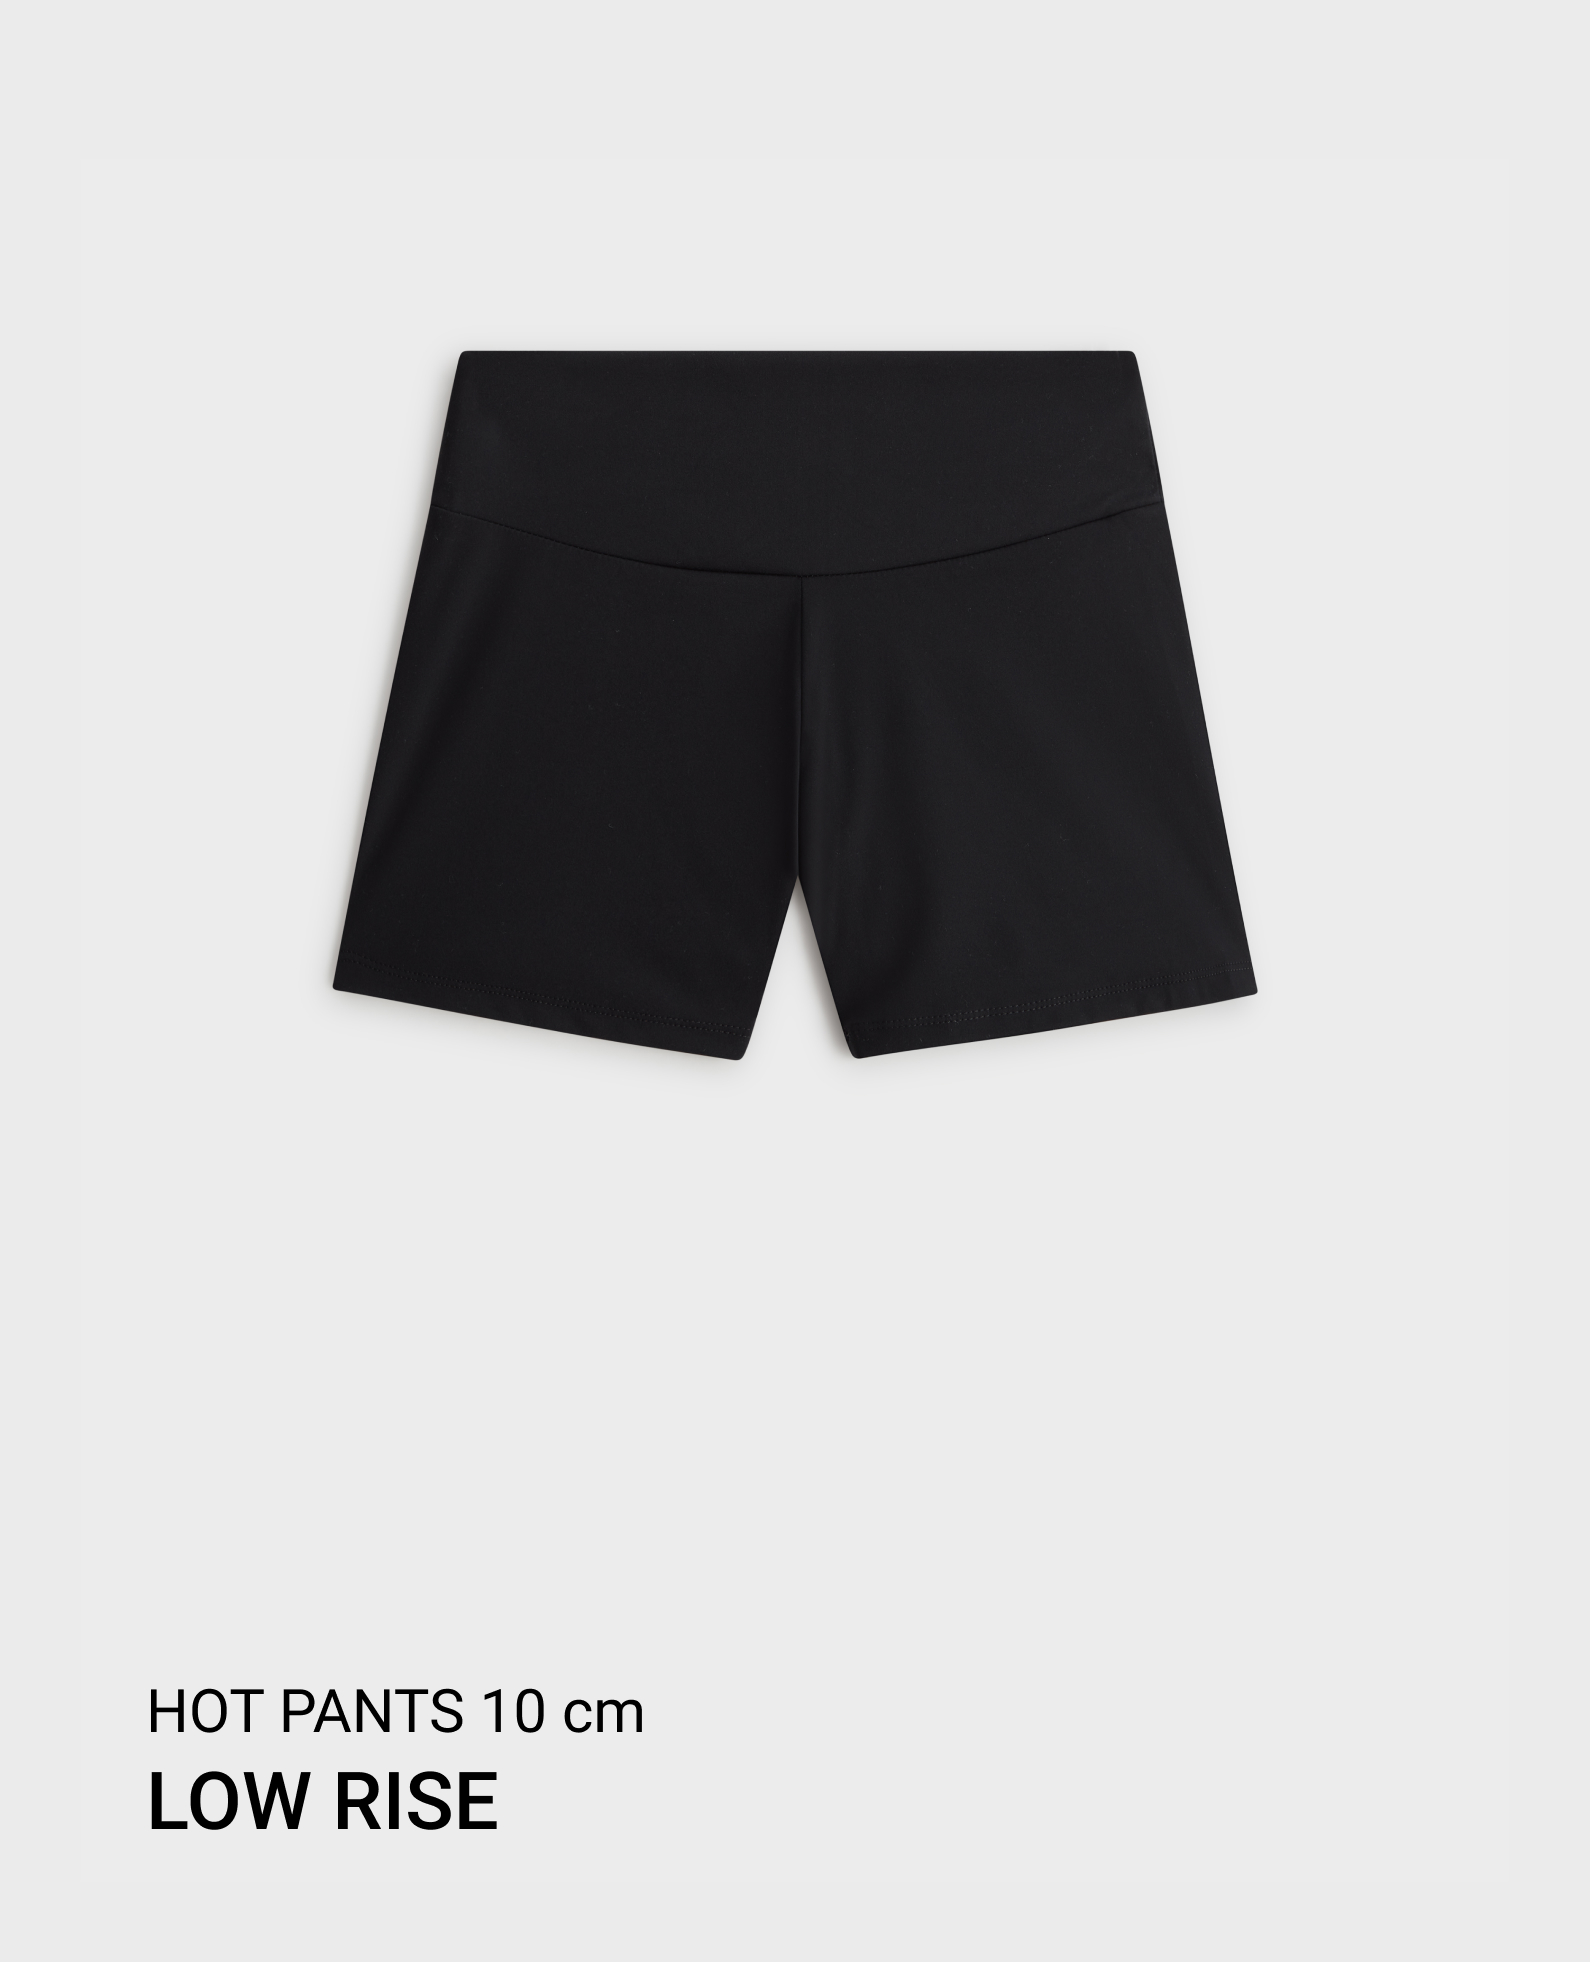 Comfortlux low-rise 10cm hot pants